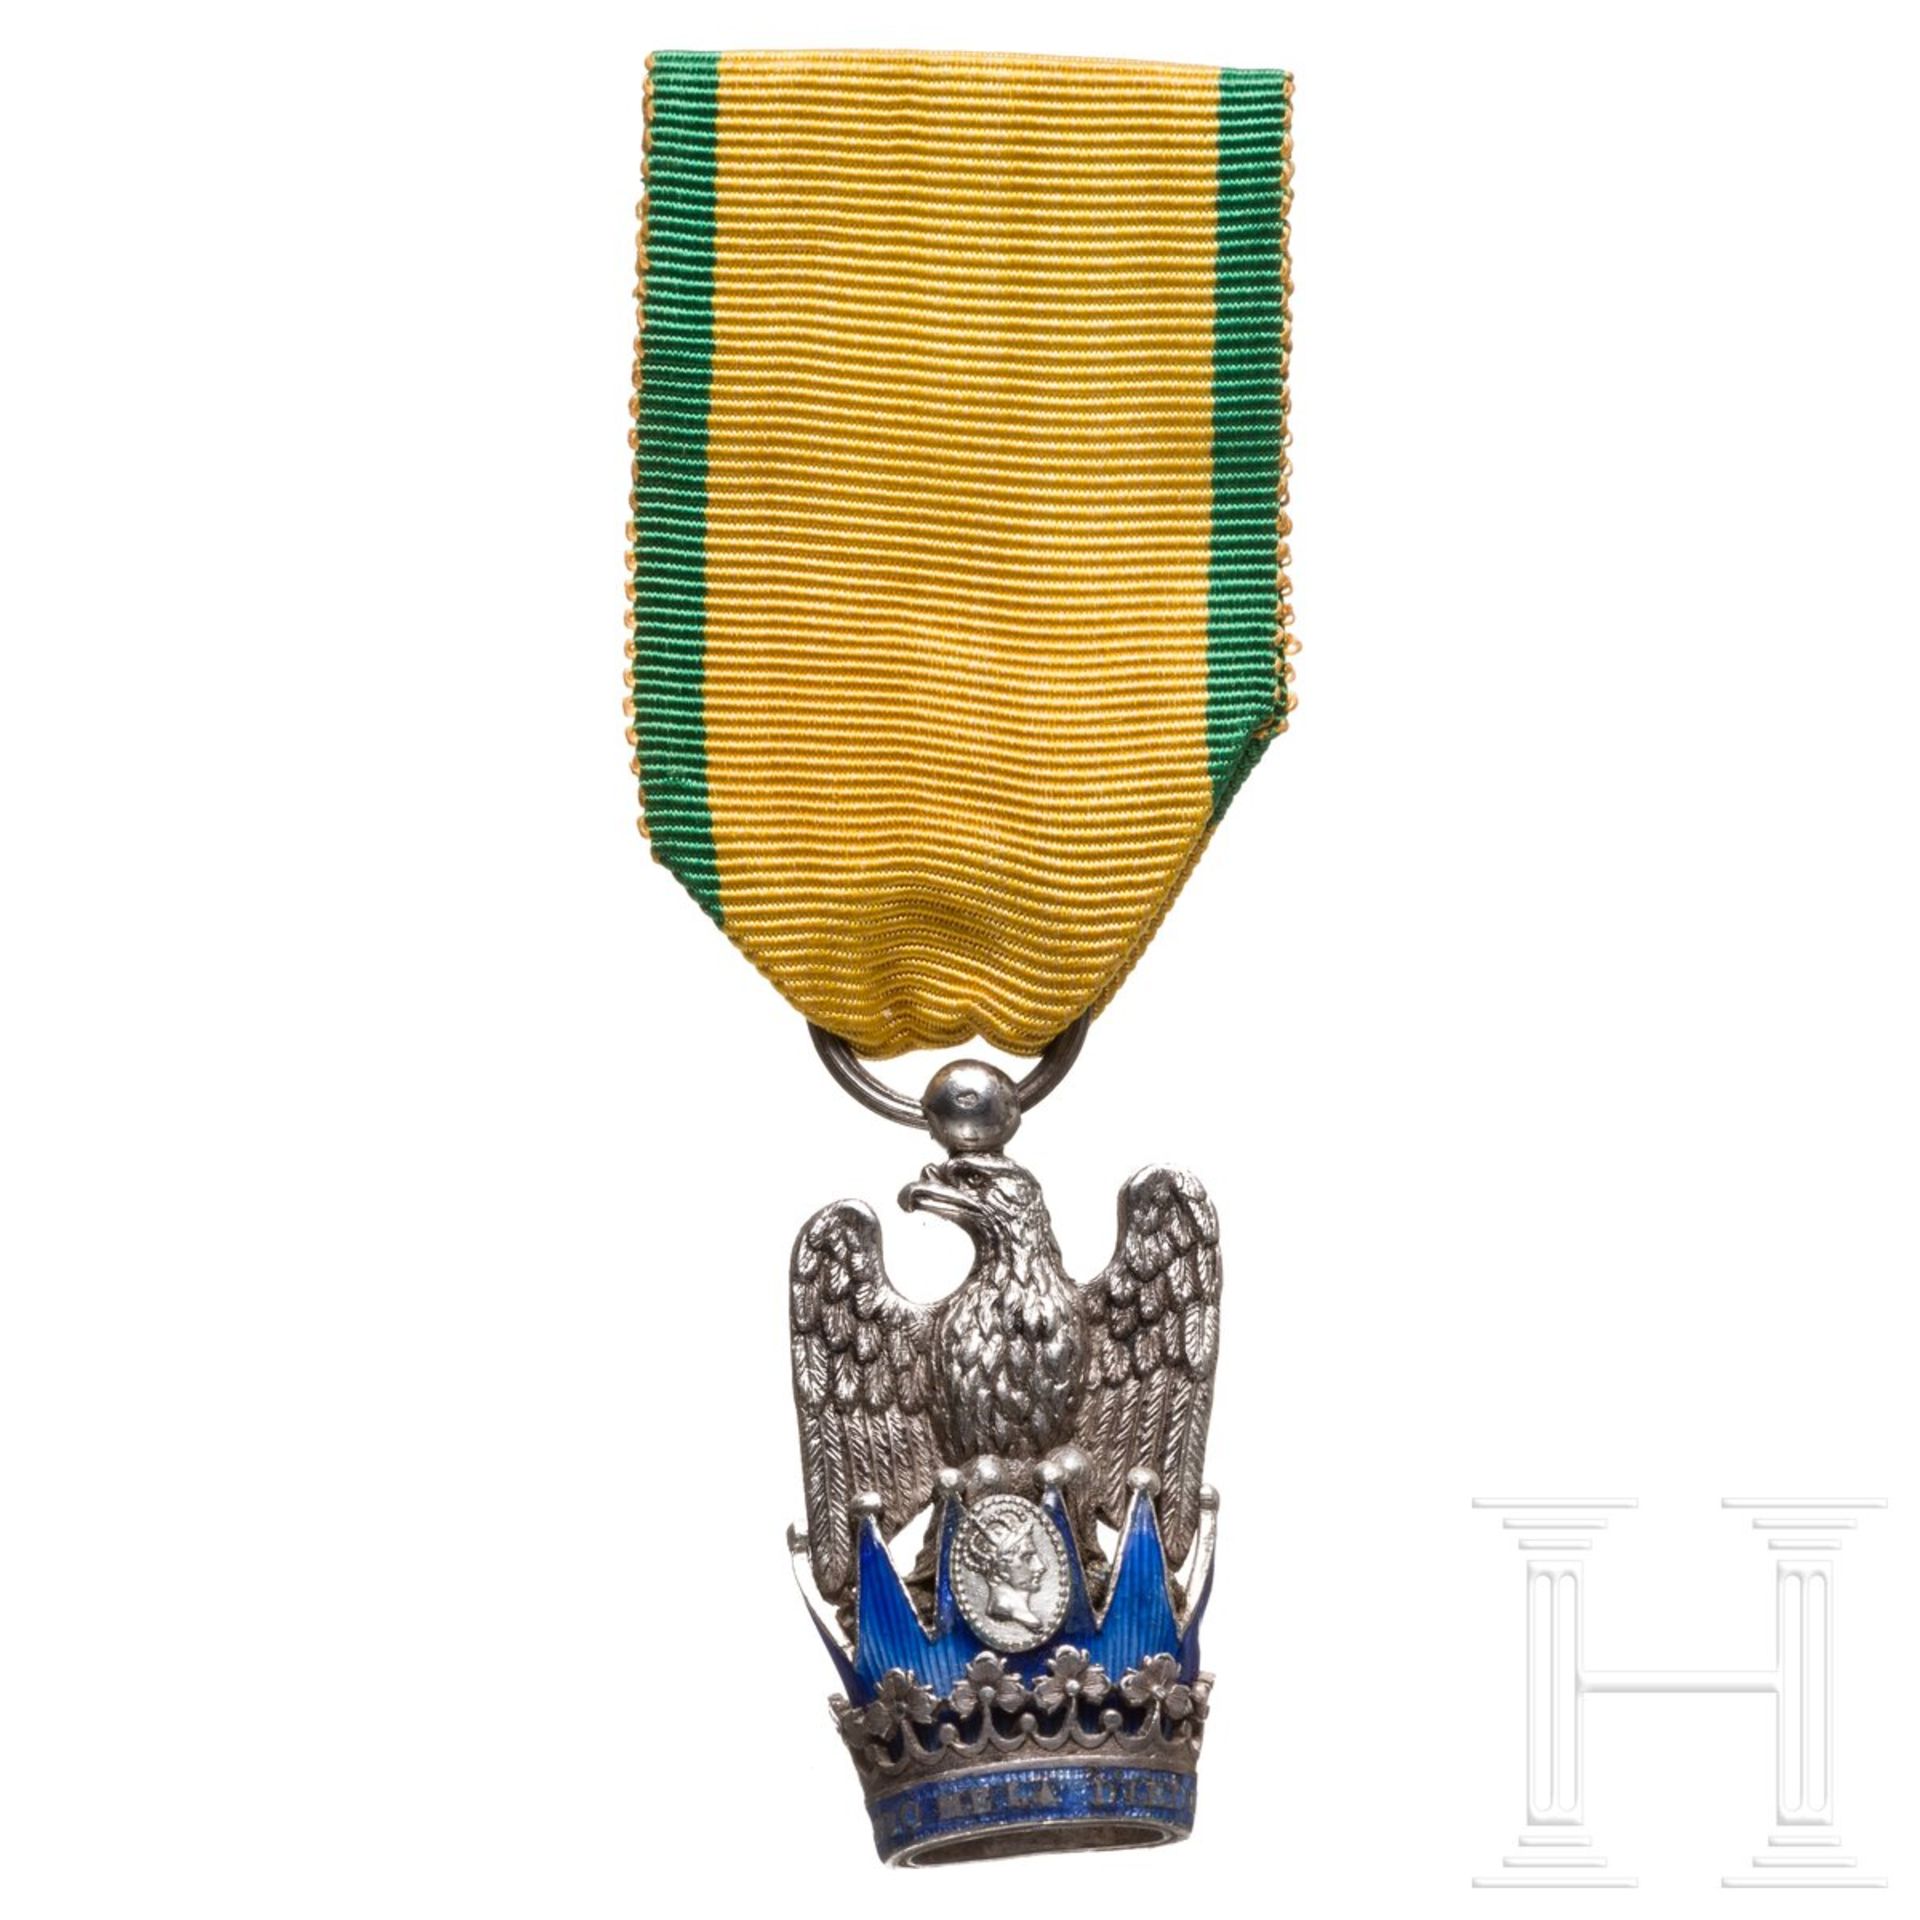 Orden der Eisernen Krone - Ritterkreuz, 1. Hälfte 19. Jhdt.